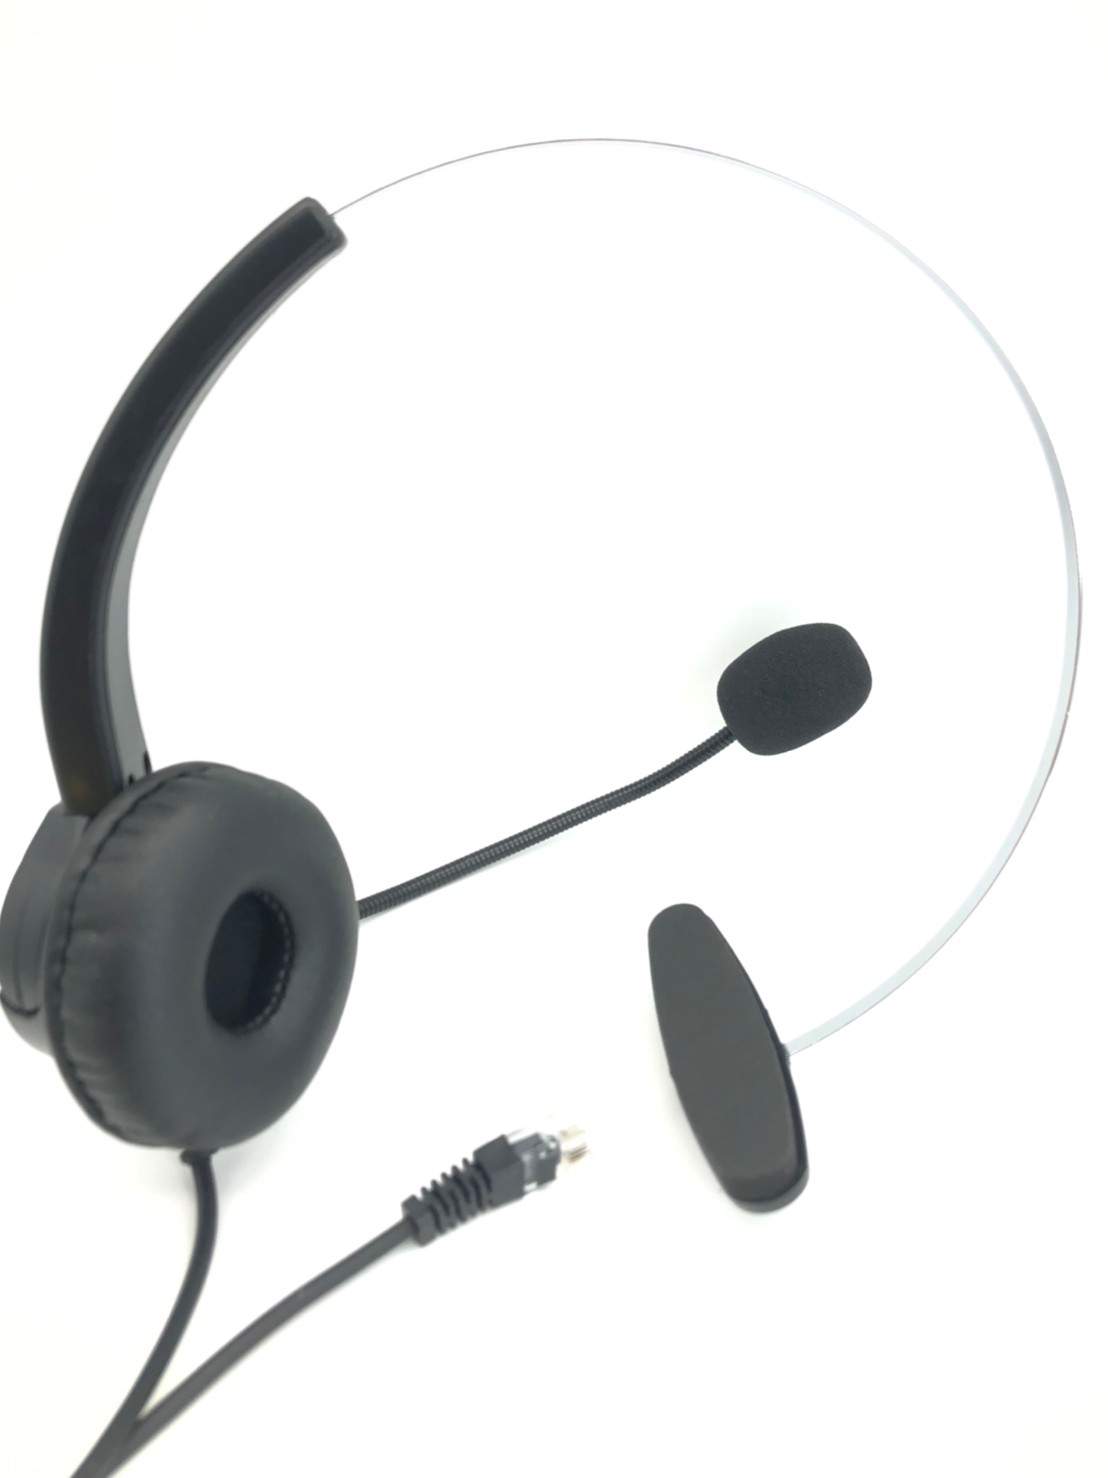 MAXCOMM MW69S 客服電話耳機麥克風 辦公室耳麥 電話總機頭戴式耳麥 電話耳機專賣店 家用電話耳機